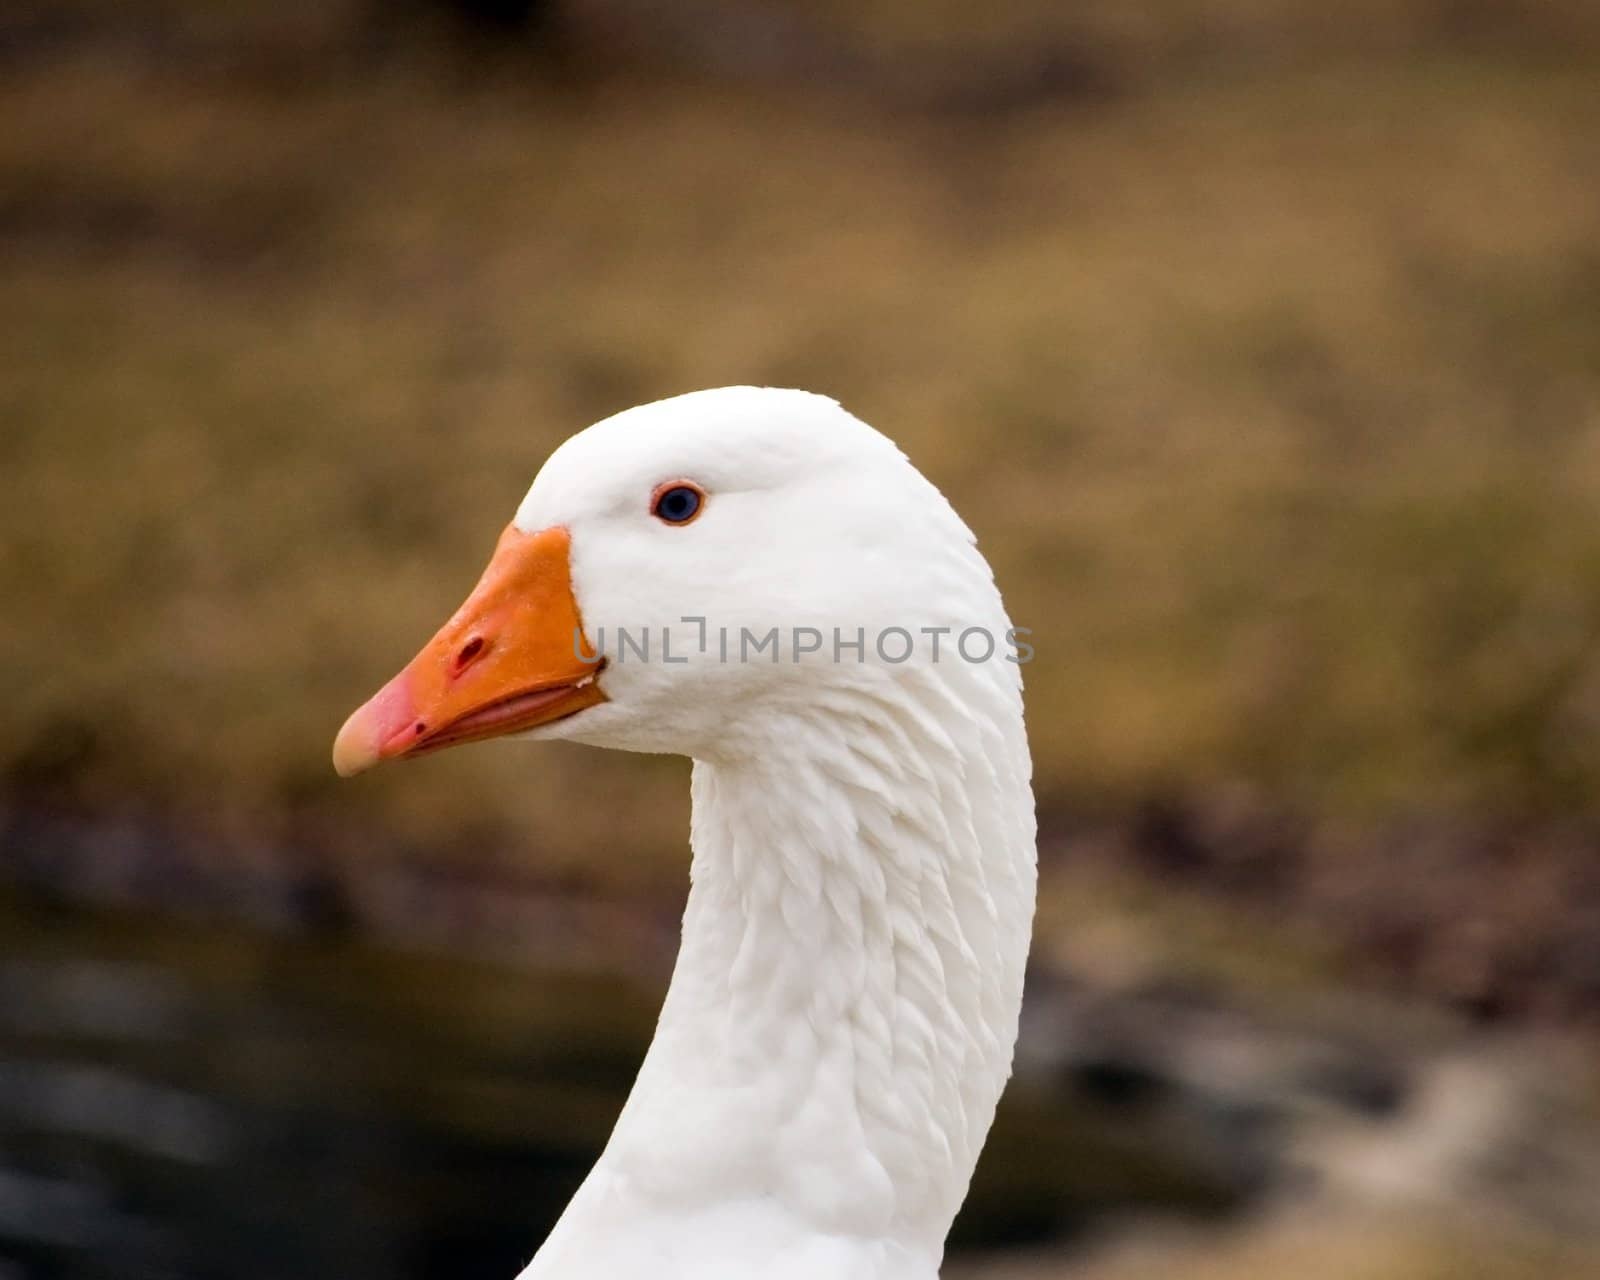 A closeup head shot of a domestic goose.